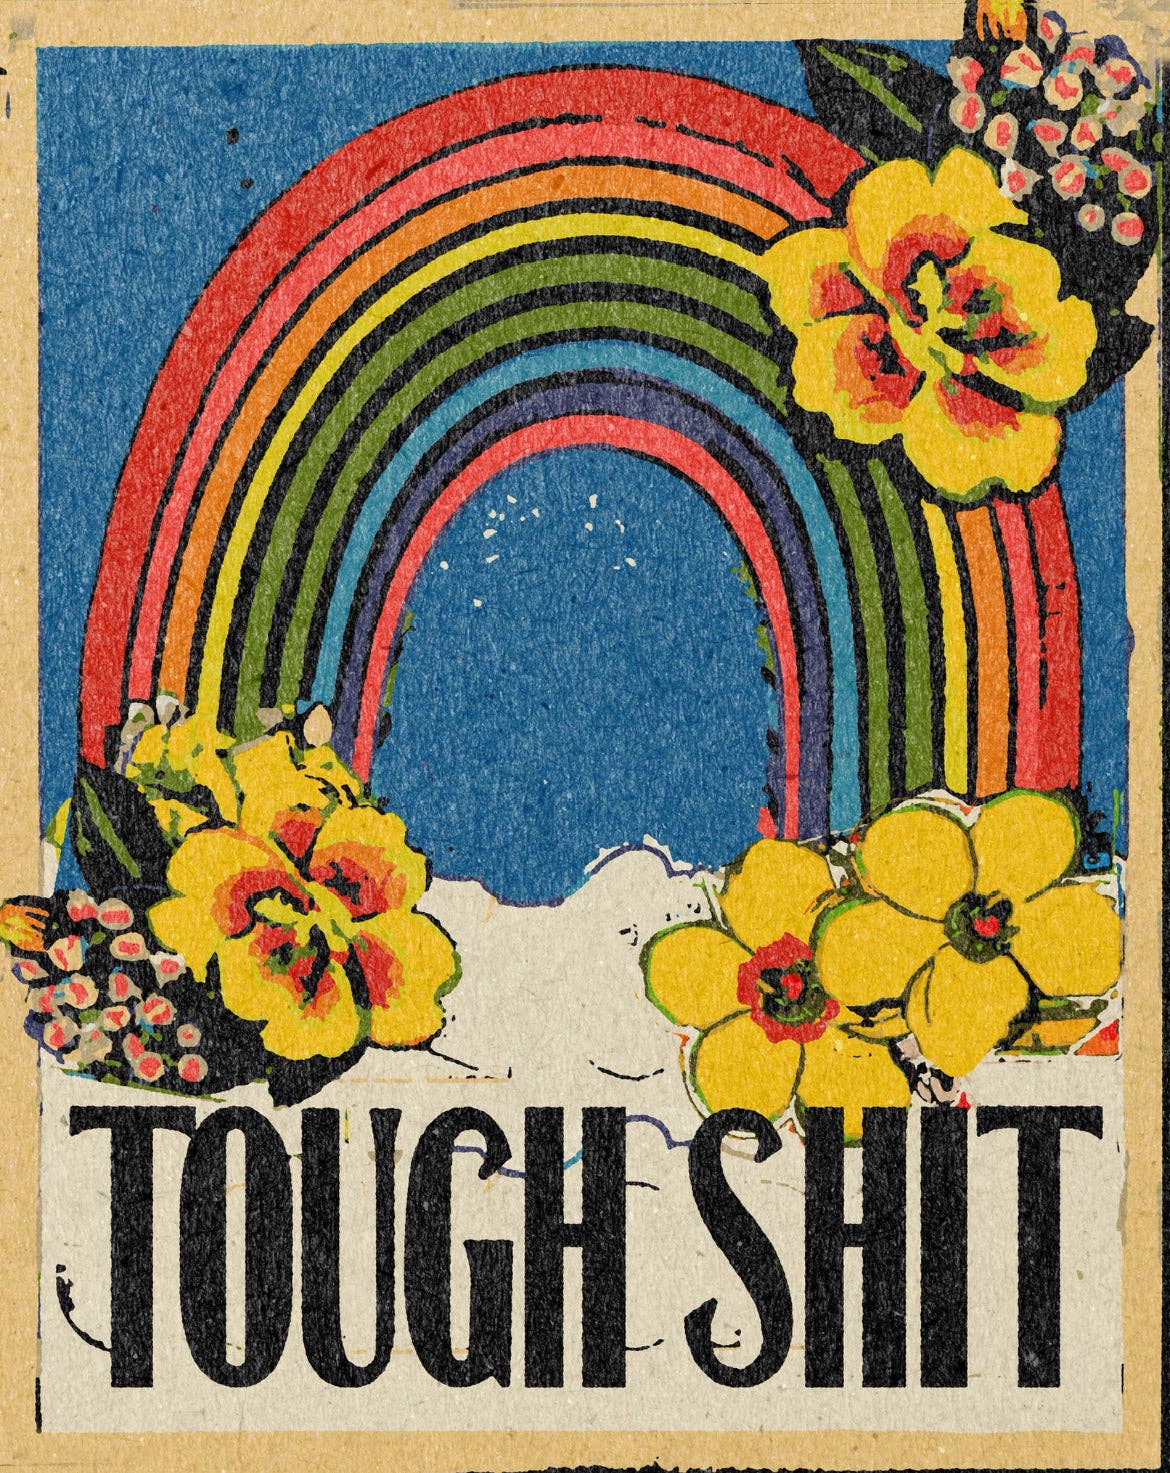 'Tough Shit' Print